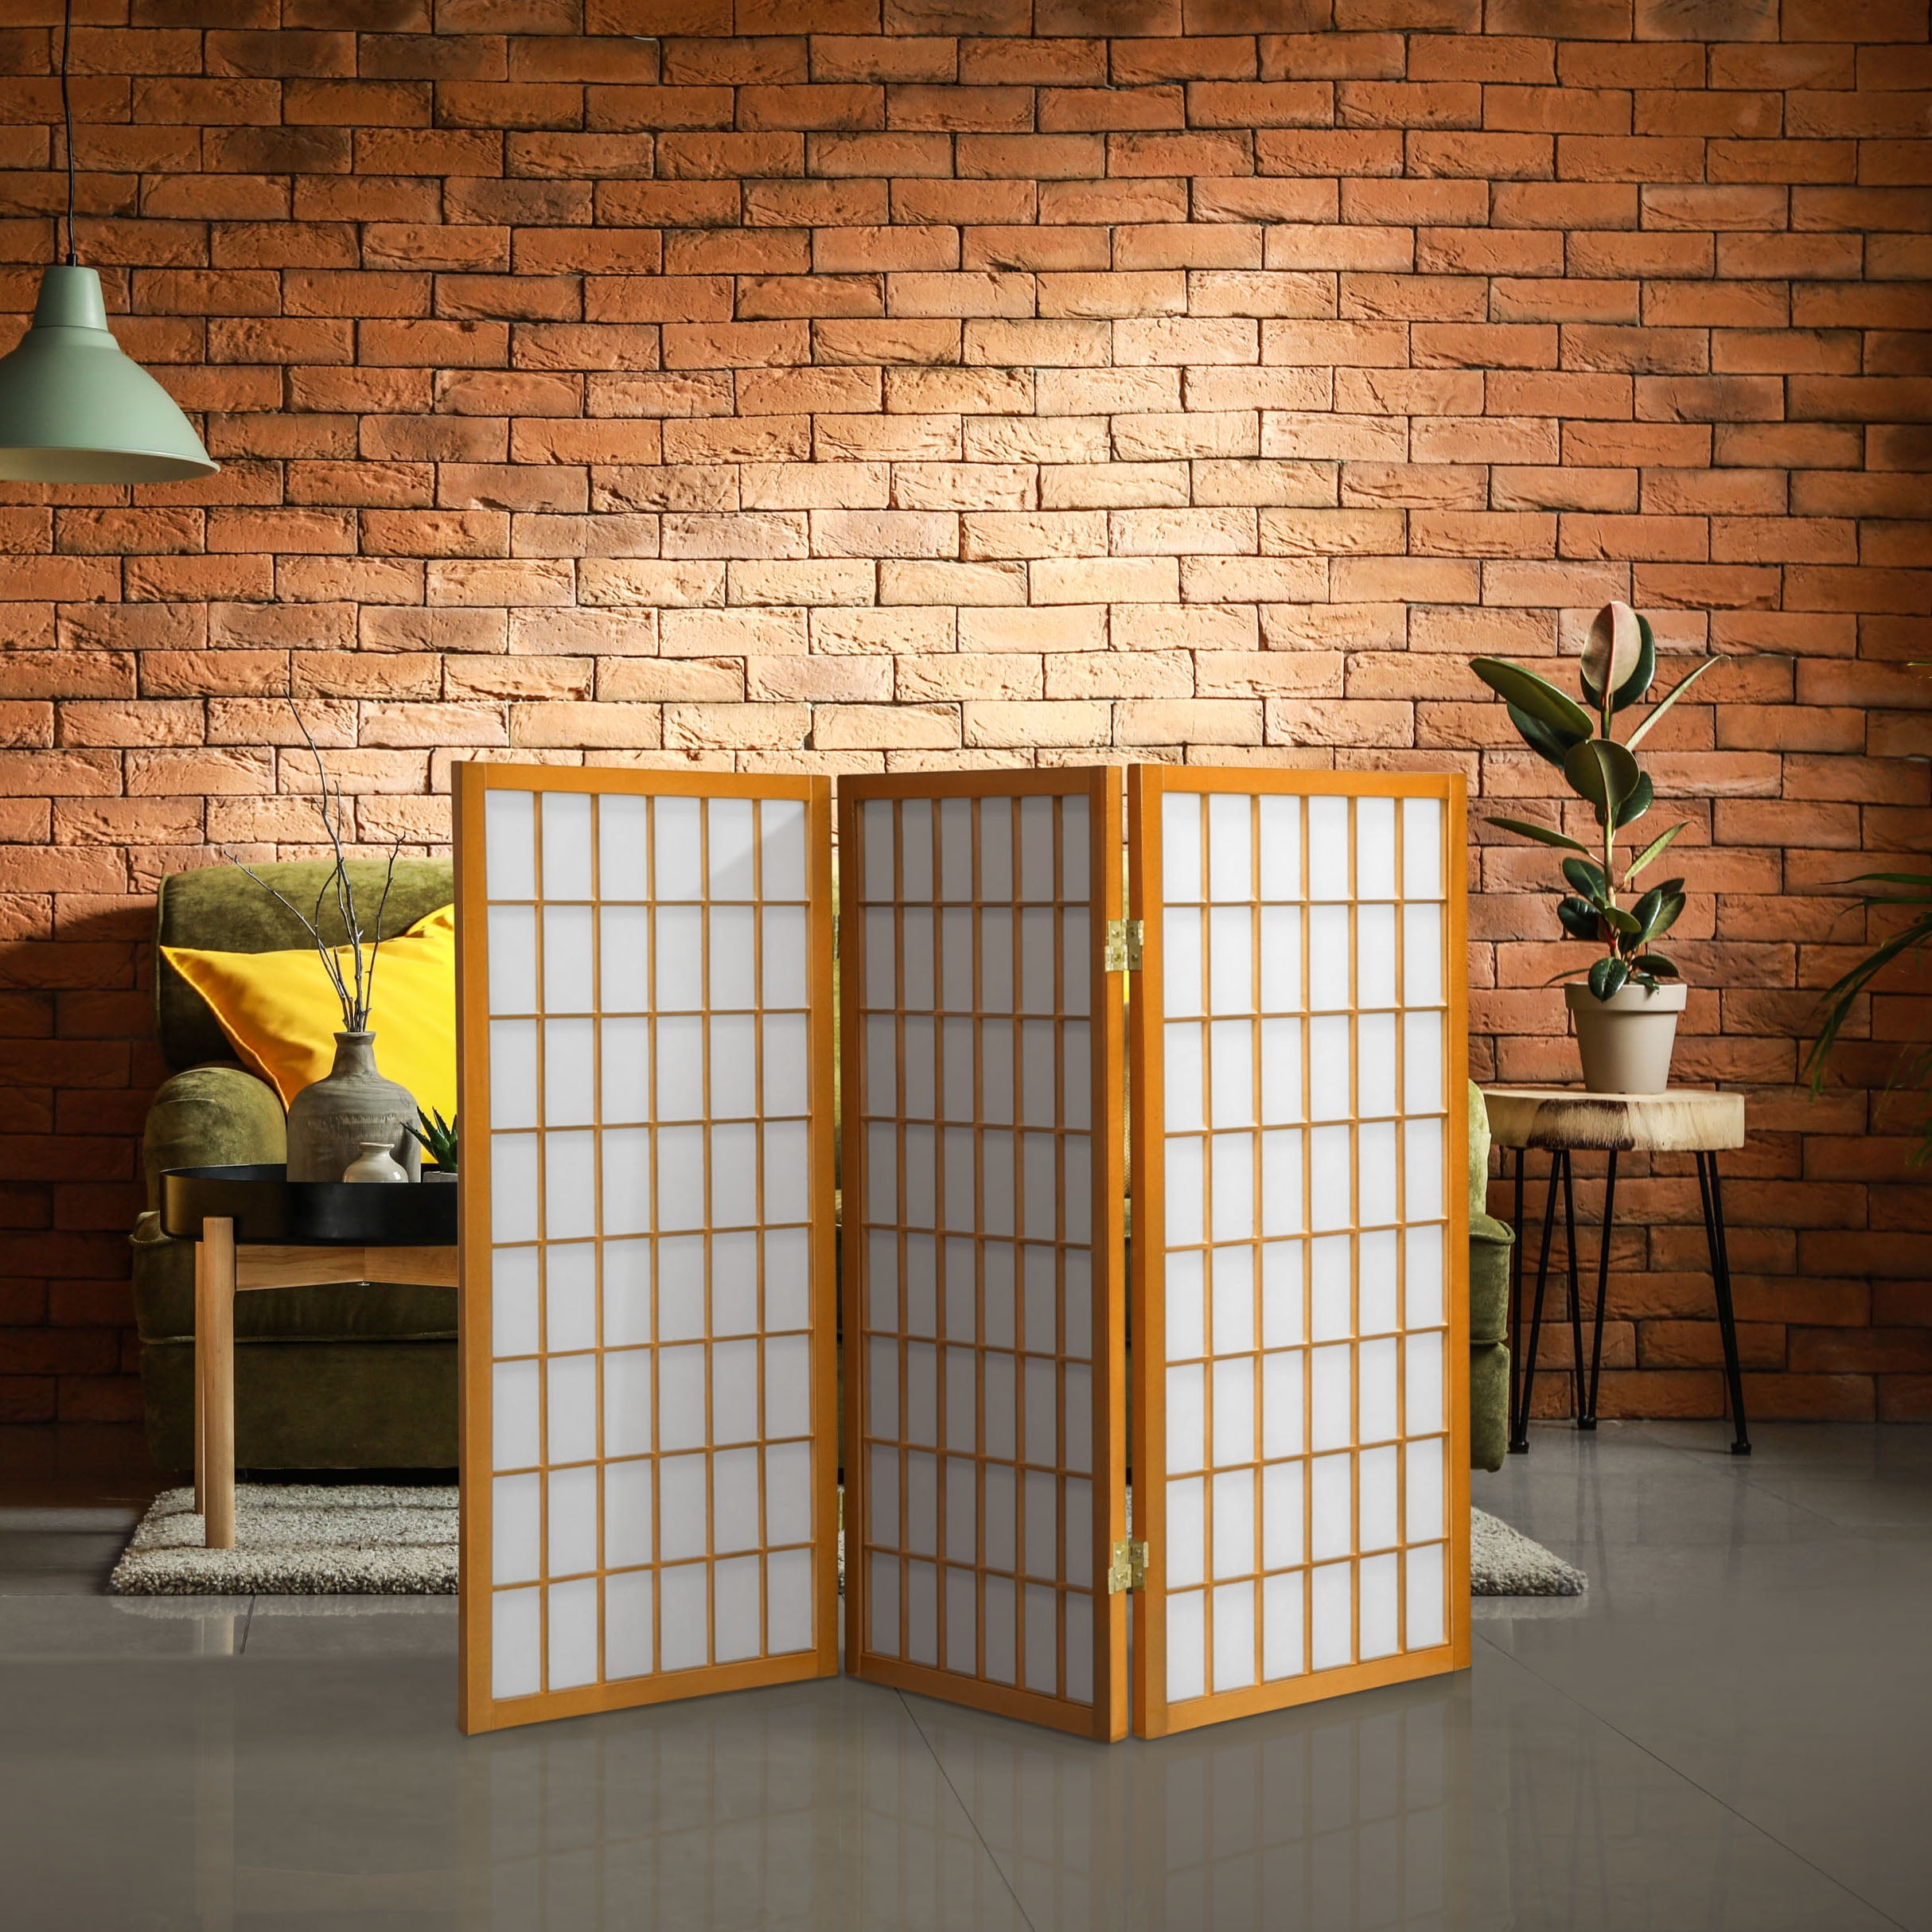 2 Tall Desktop Window Pane Shoji Screen by Oriental Furniture for sale online 